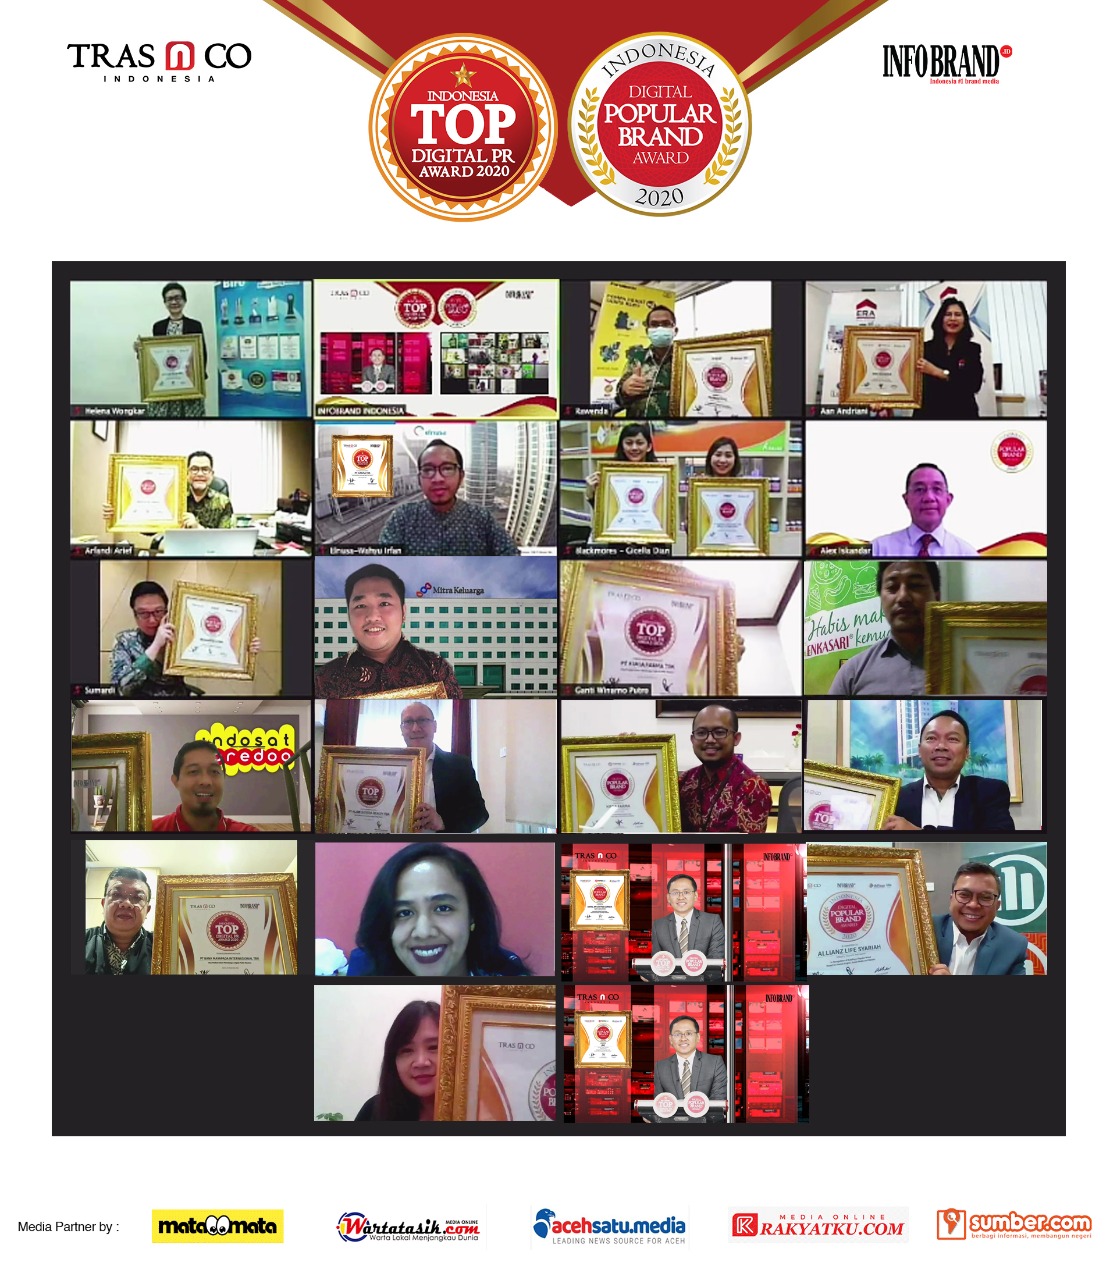 Ini Dia Peraih Penghargaan Indonesia Digital Popular Brand Award & TOP Digital PR Award 2020